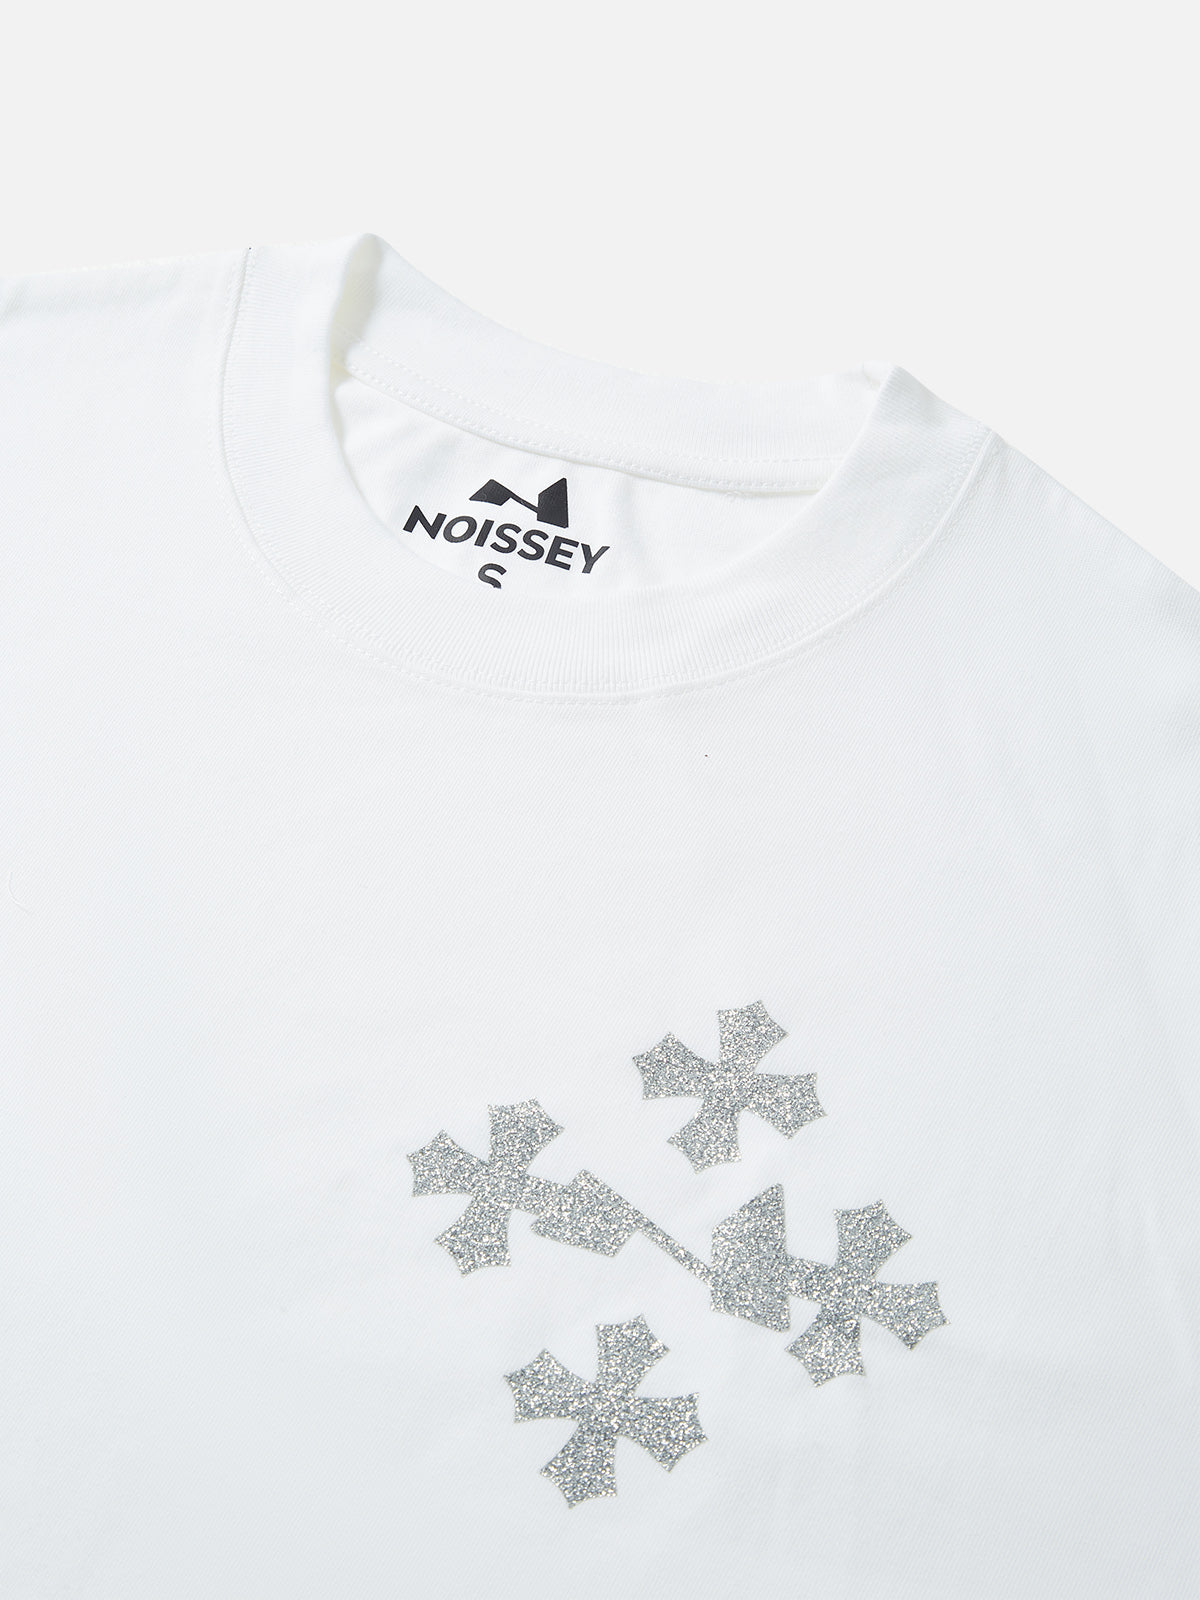 Noissey Original Logo High-Quality T-shirt